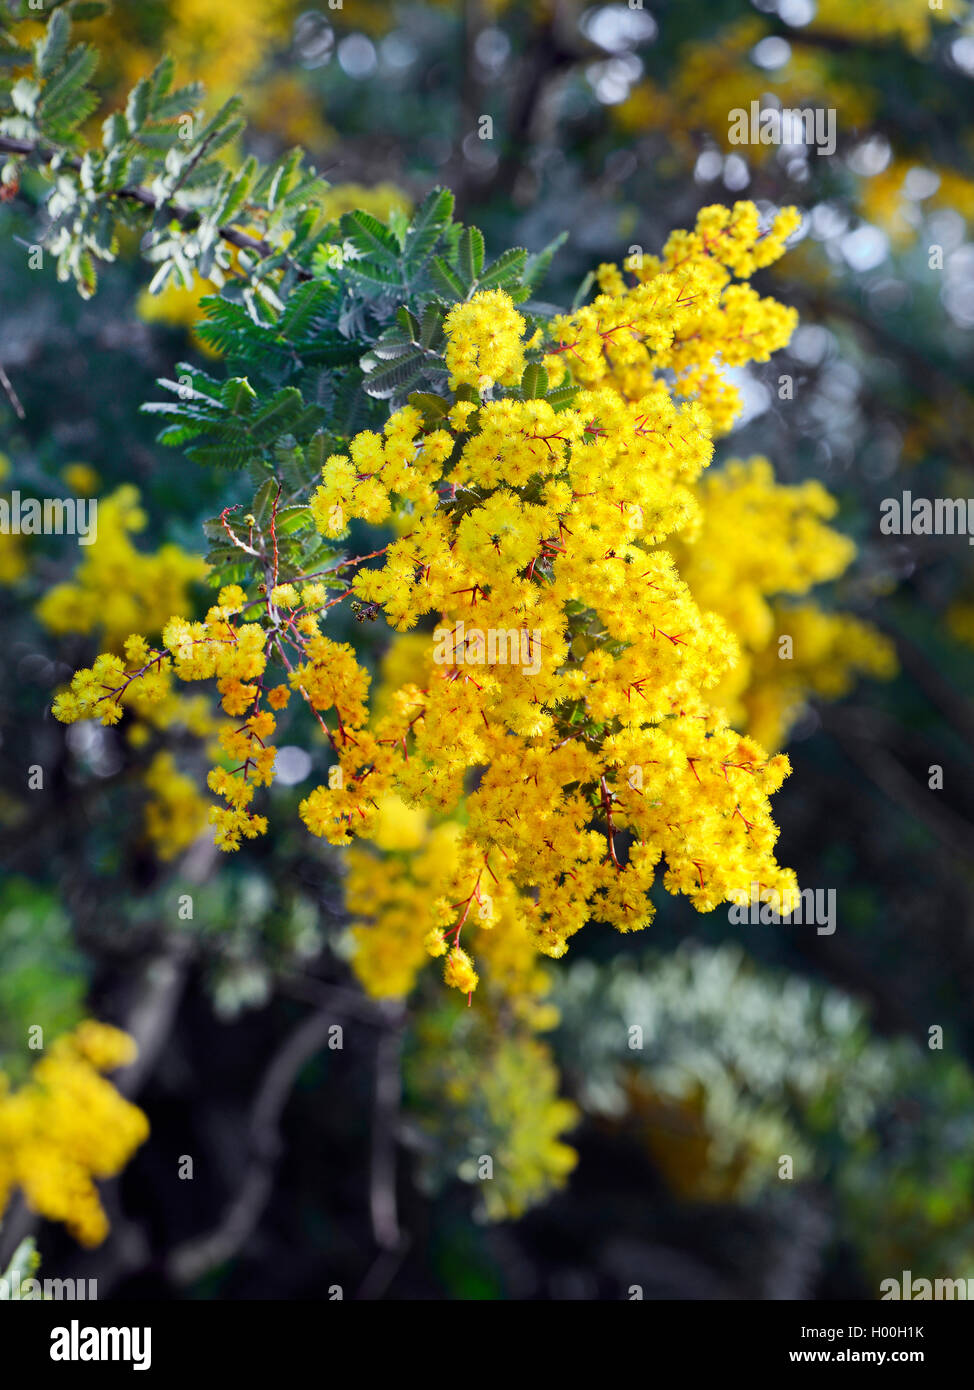 cootamunda wattle (Acacia baileyana), blooming, Bundesrepublik Deutschland Stock Photo